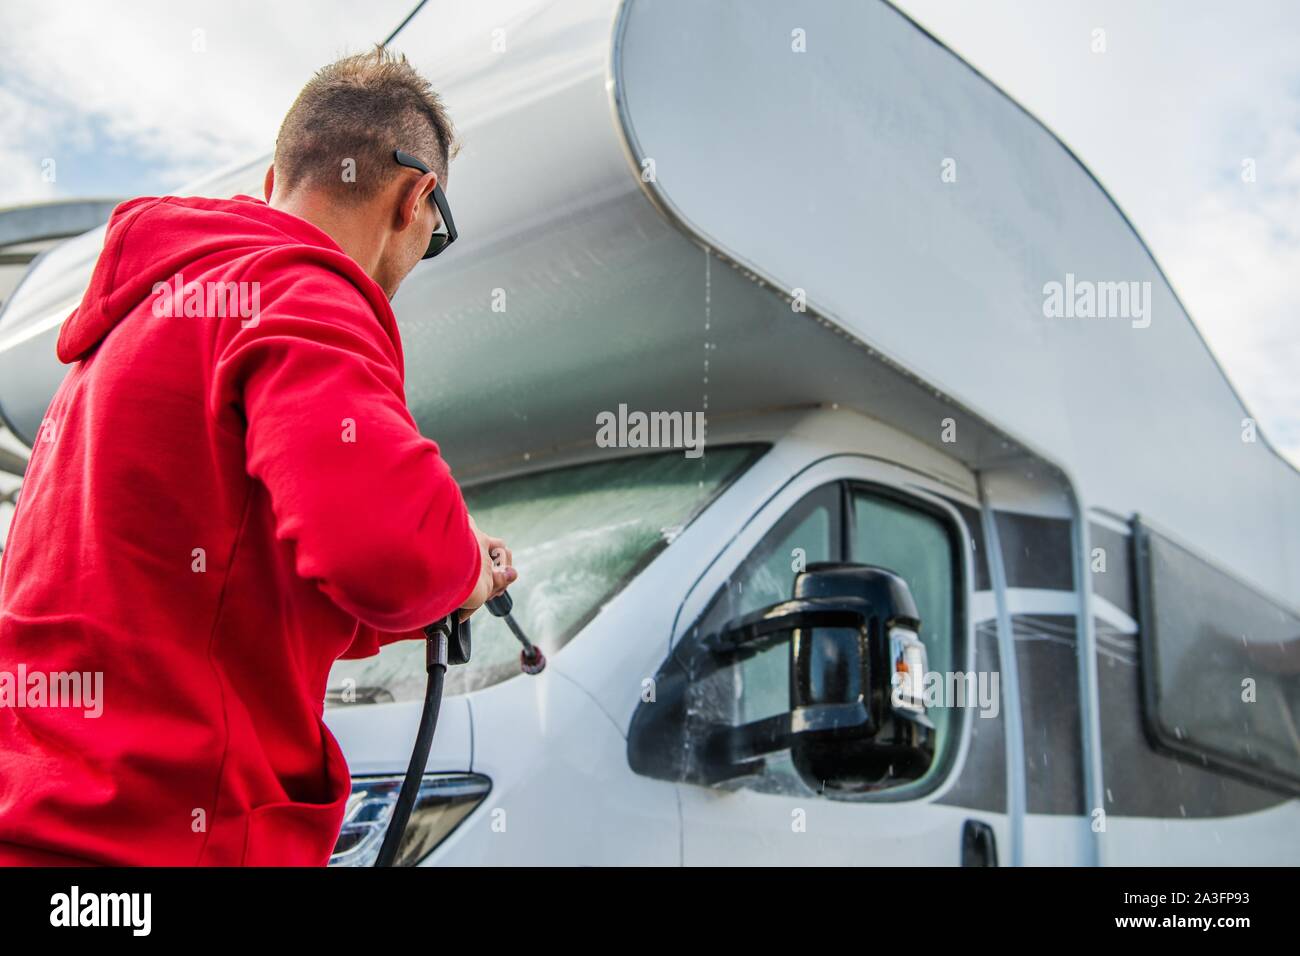 Les hommes de race blanche de laver ses RV Camping Camping-car de classe C à l'aide de la rondelle de pression. Thème de l'industrie du voyage. Banque D'Images